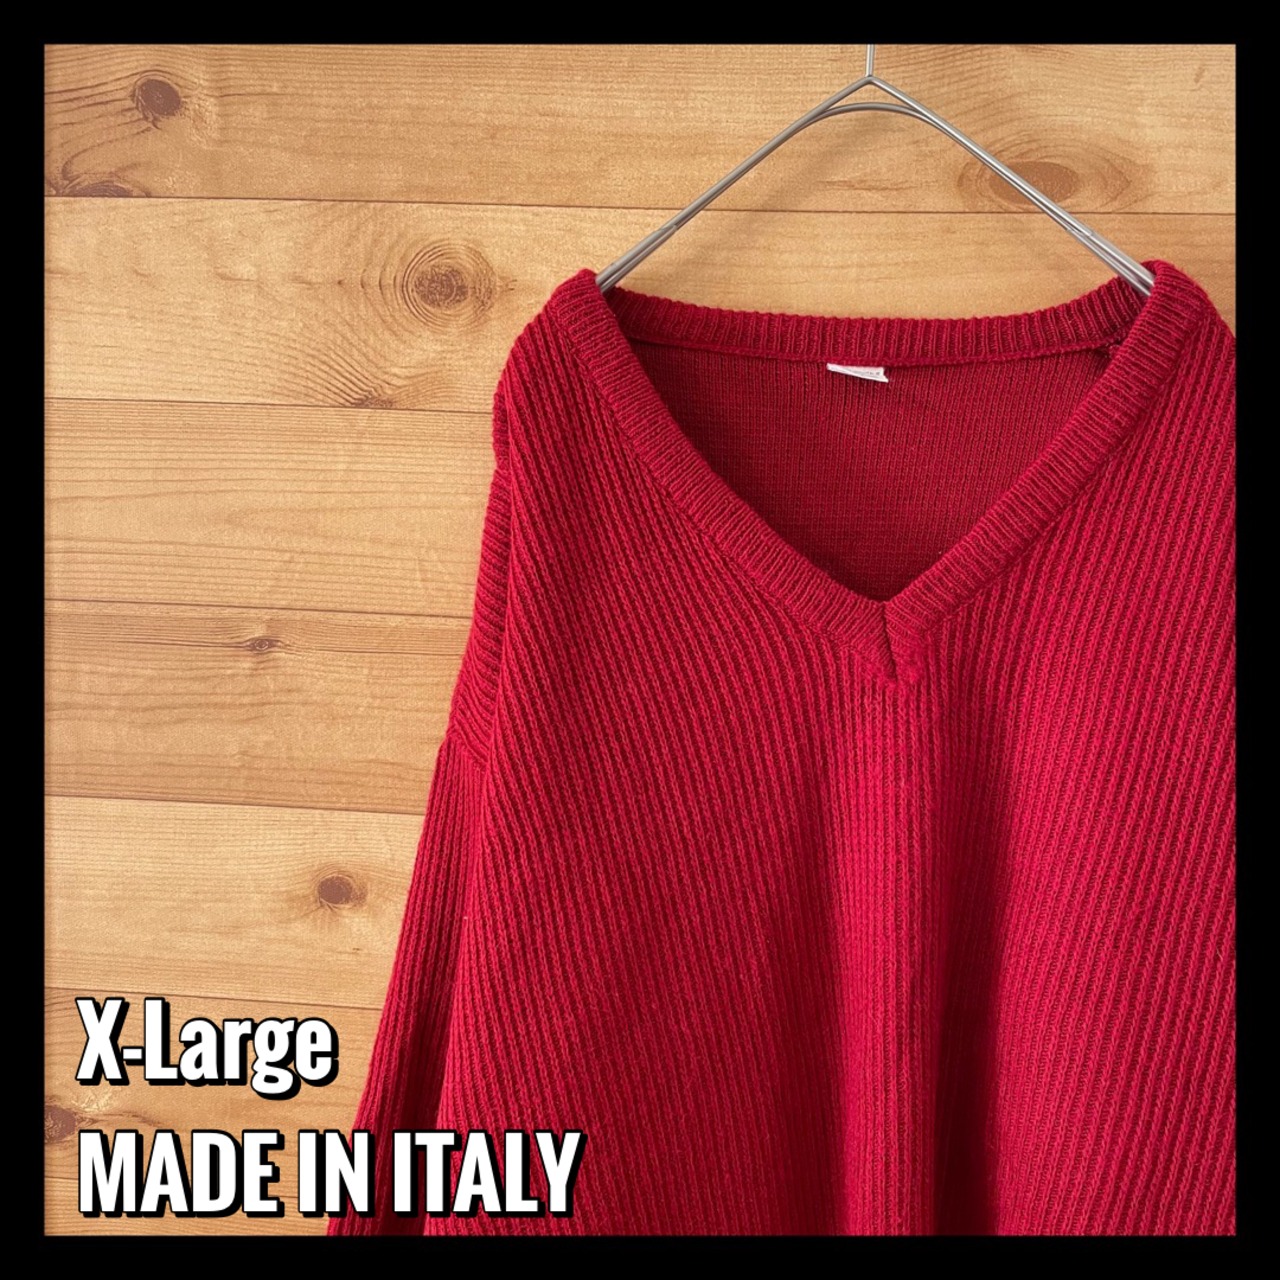 【EU古着】イタリア製 ニット セーター Vネック ウール アクリル X-Large ヨーロッパ古着